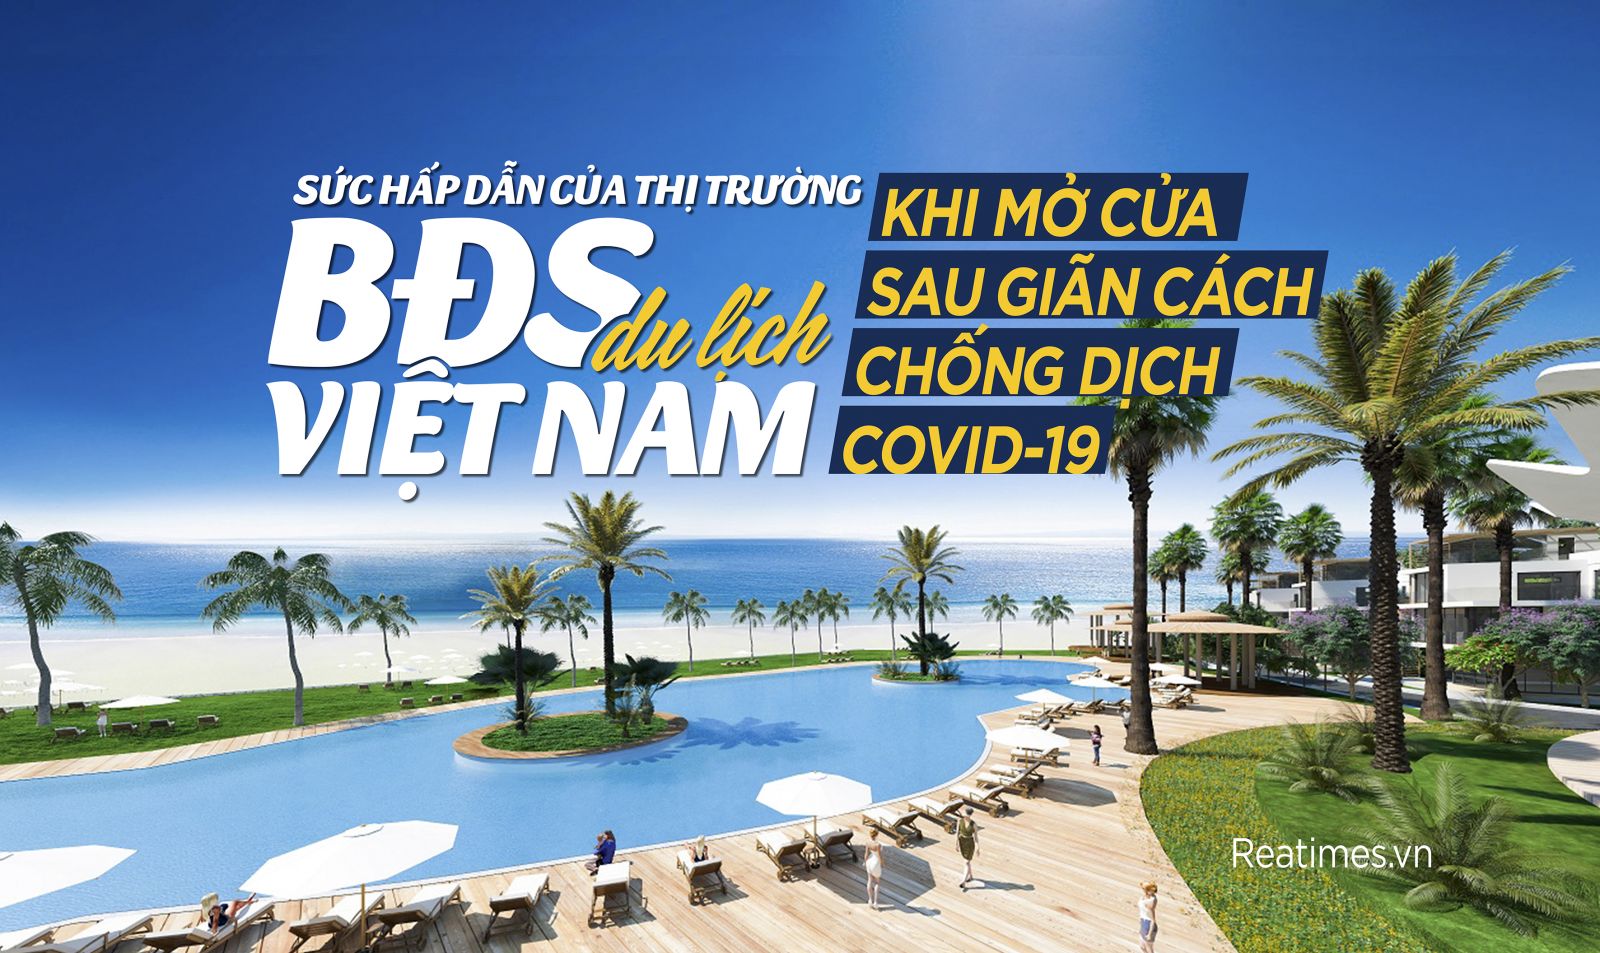 Sức hấp dẫn của thị trường bất động sản du lịch Việt Nam khi mở cửa sau giãn cách chống dịch Covid-19